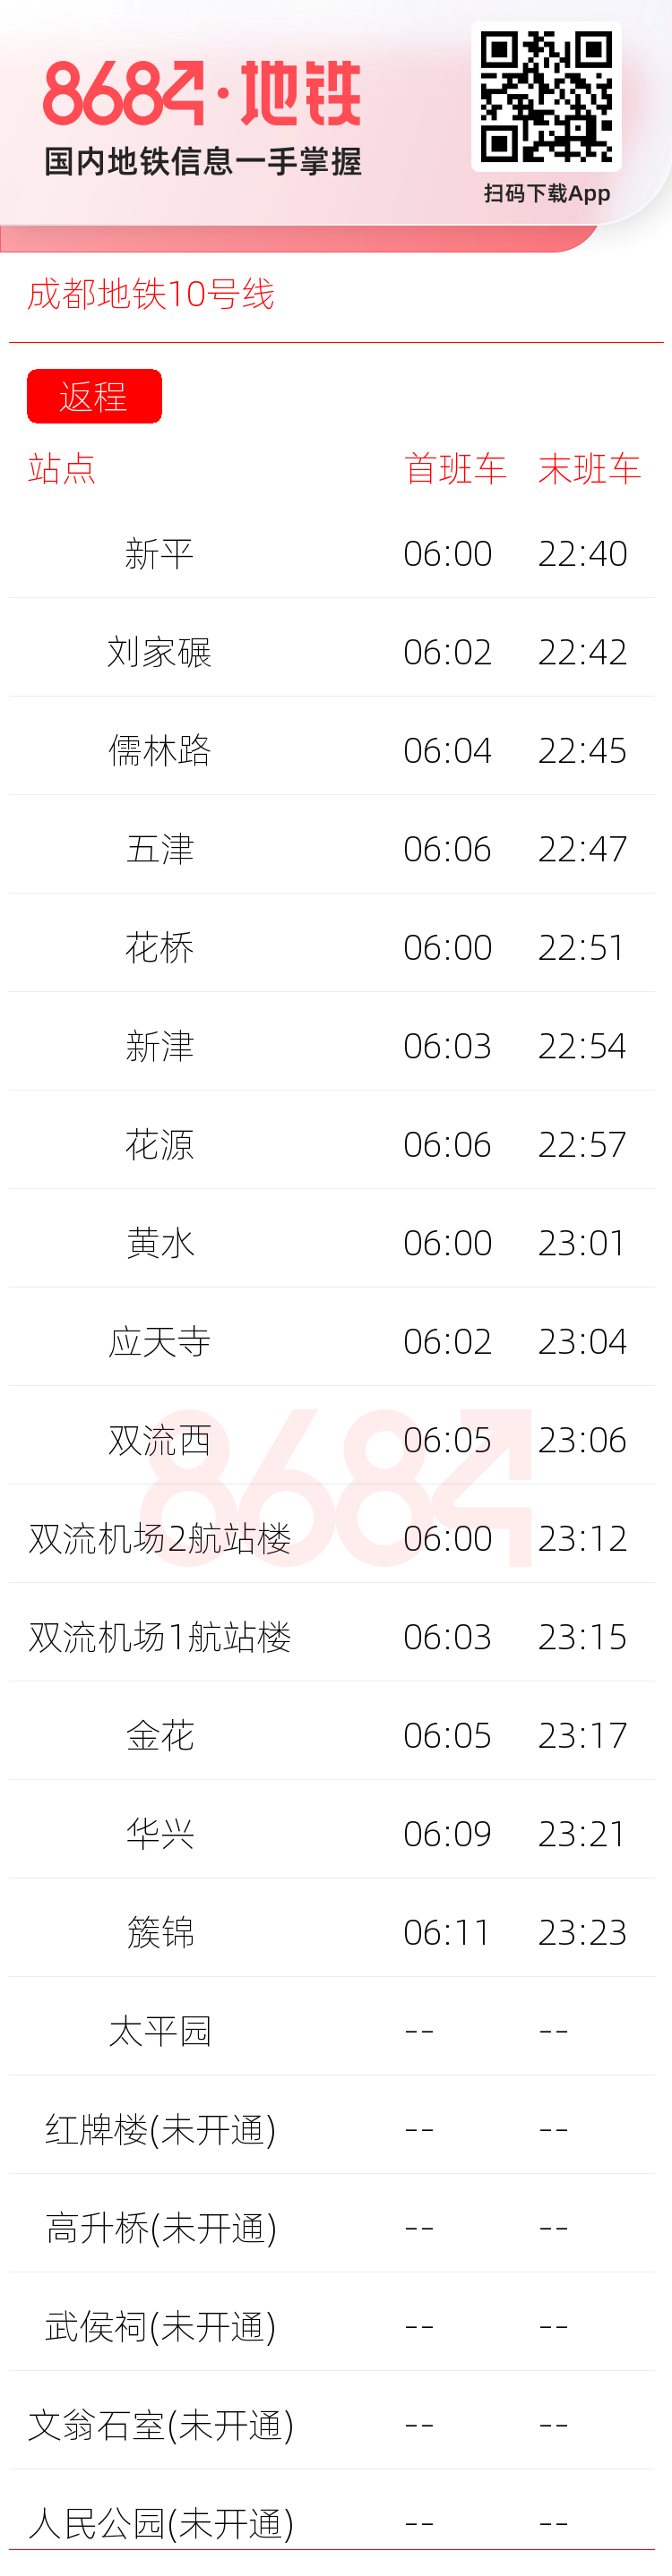 成都地铁10号线运营时间表